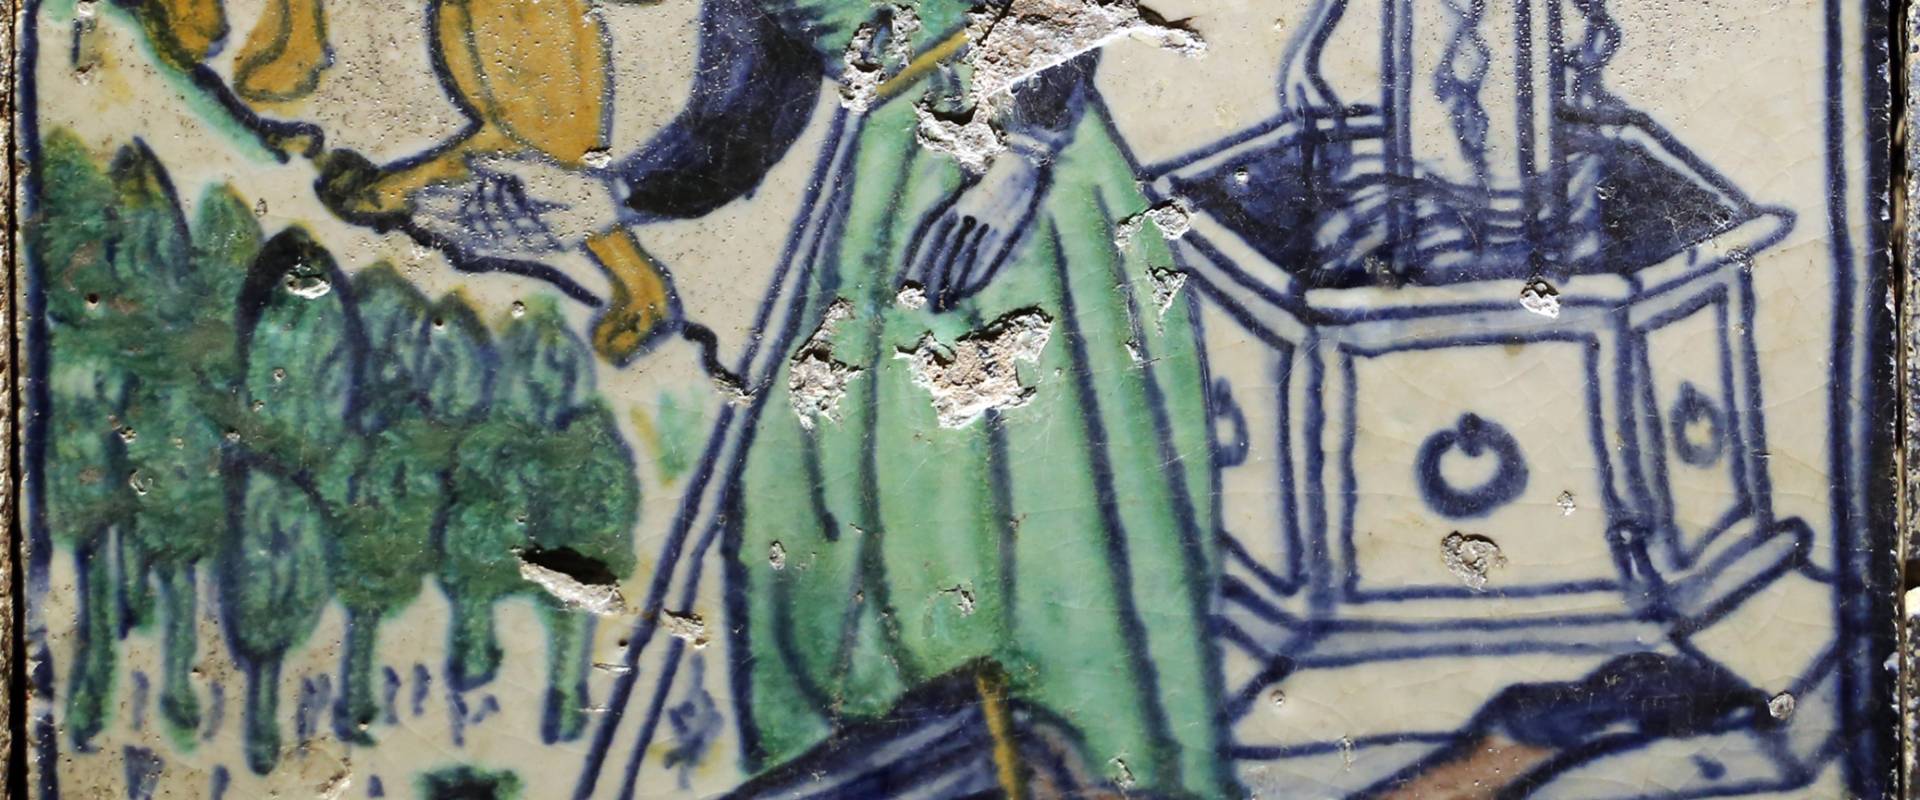 Bottega pesarese, pavimento maiolicato dal monastero di san paolo a parma, 1470-82 ca., uomo trafitto presso un pozzo photo by Sailko